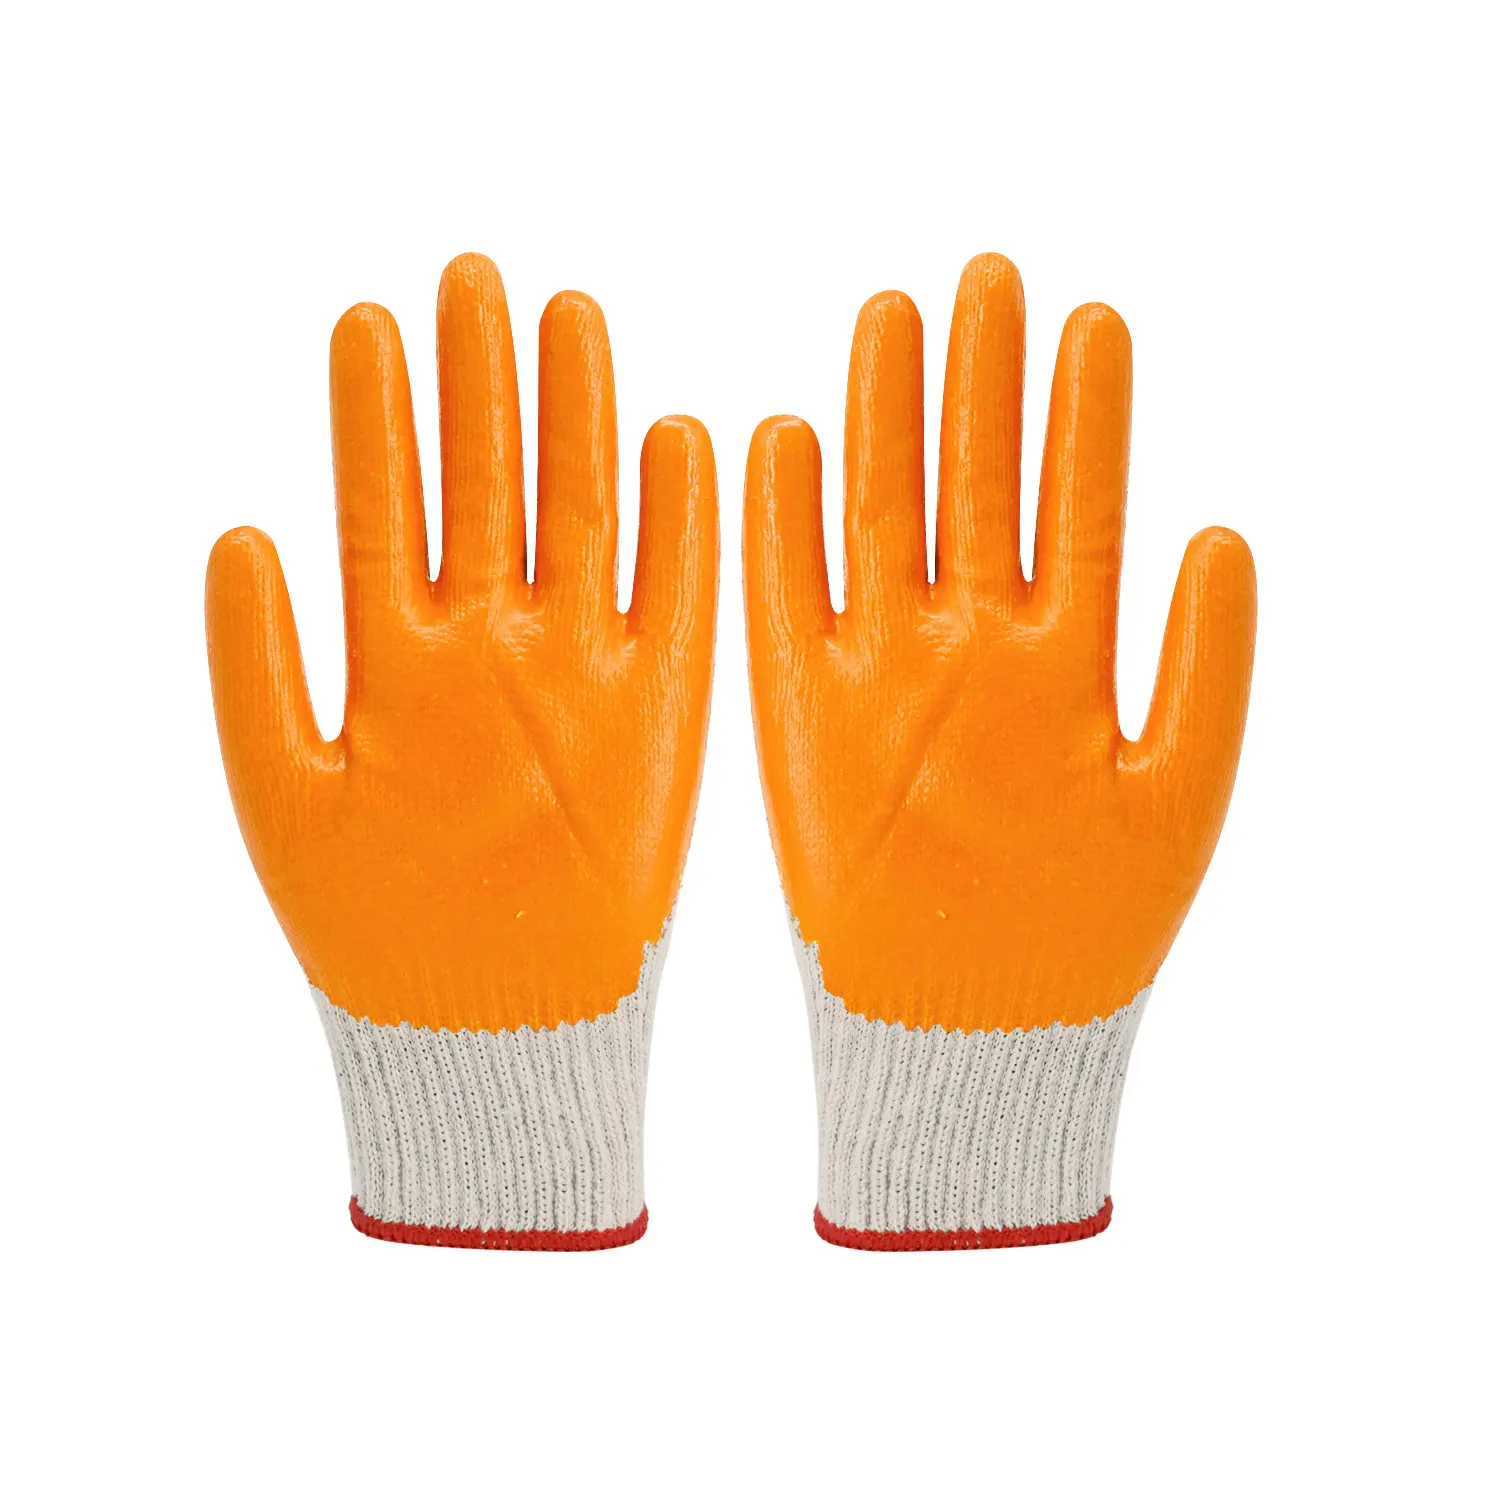 Gants en latex orange de gros en Chine Gants en caoutchouc trempés dans du fil de coton de calibre 7 Gants de travail de sécurité